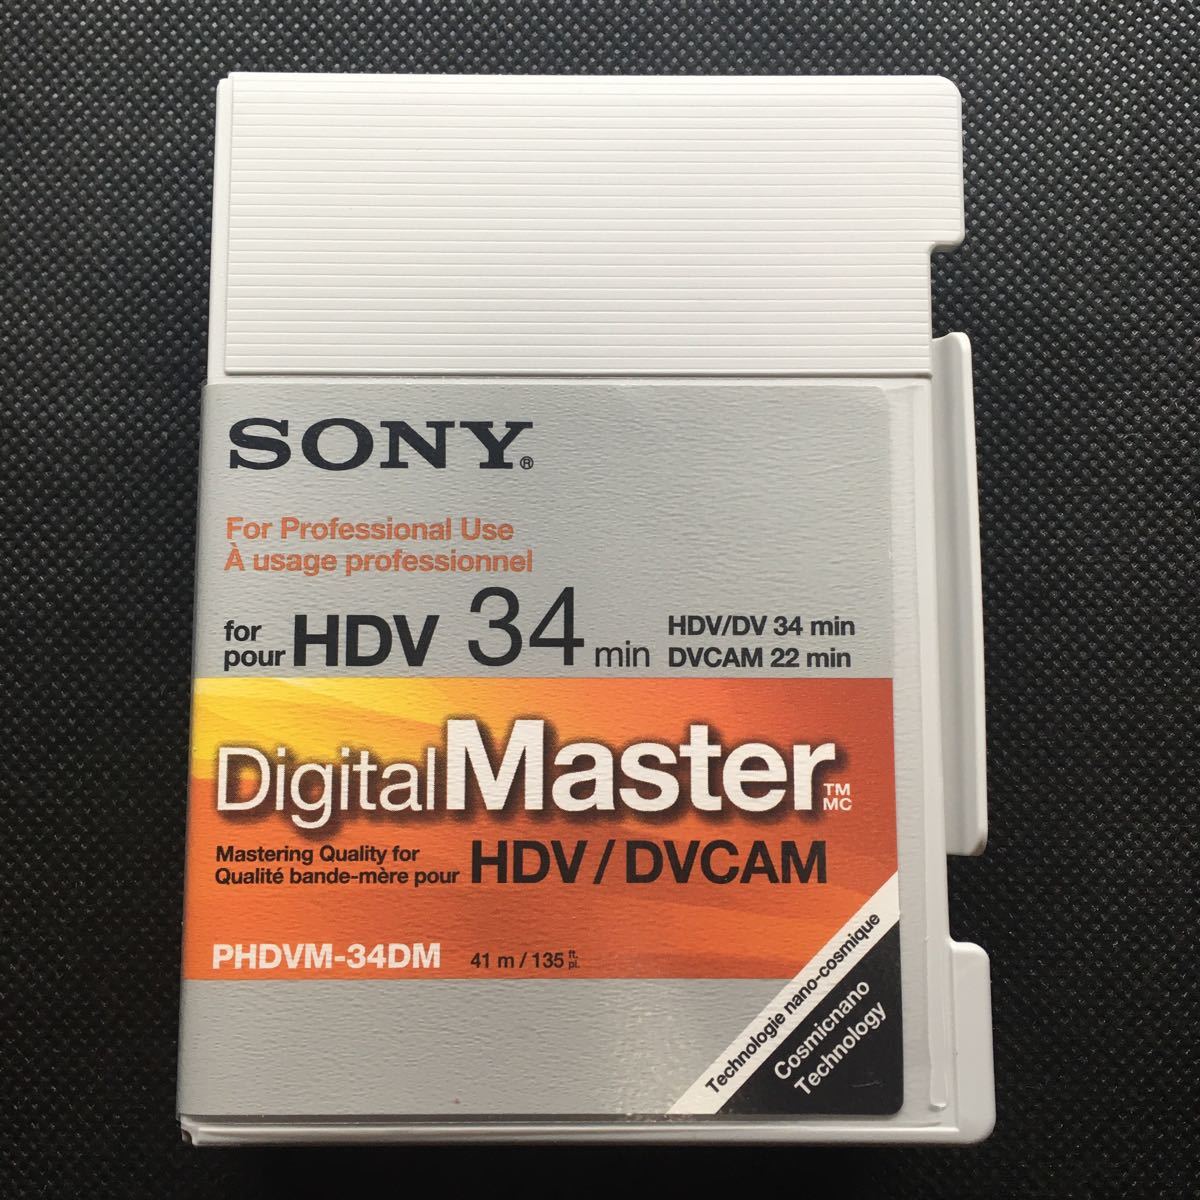 [未使用][長期保管品のためジャンク] SONY HDV 34分 HDV/DV 34分 DVCAM 22分 PHDVM-34DM ソニー DigitalMaster